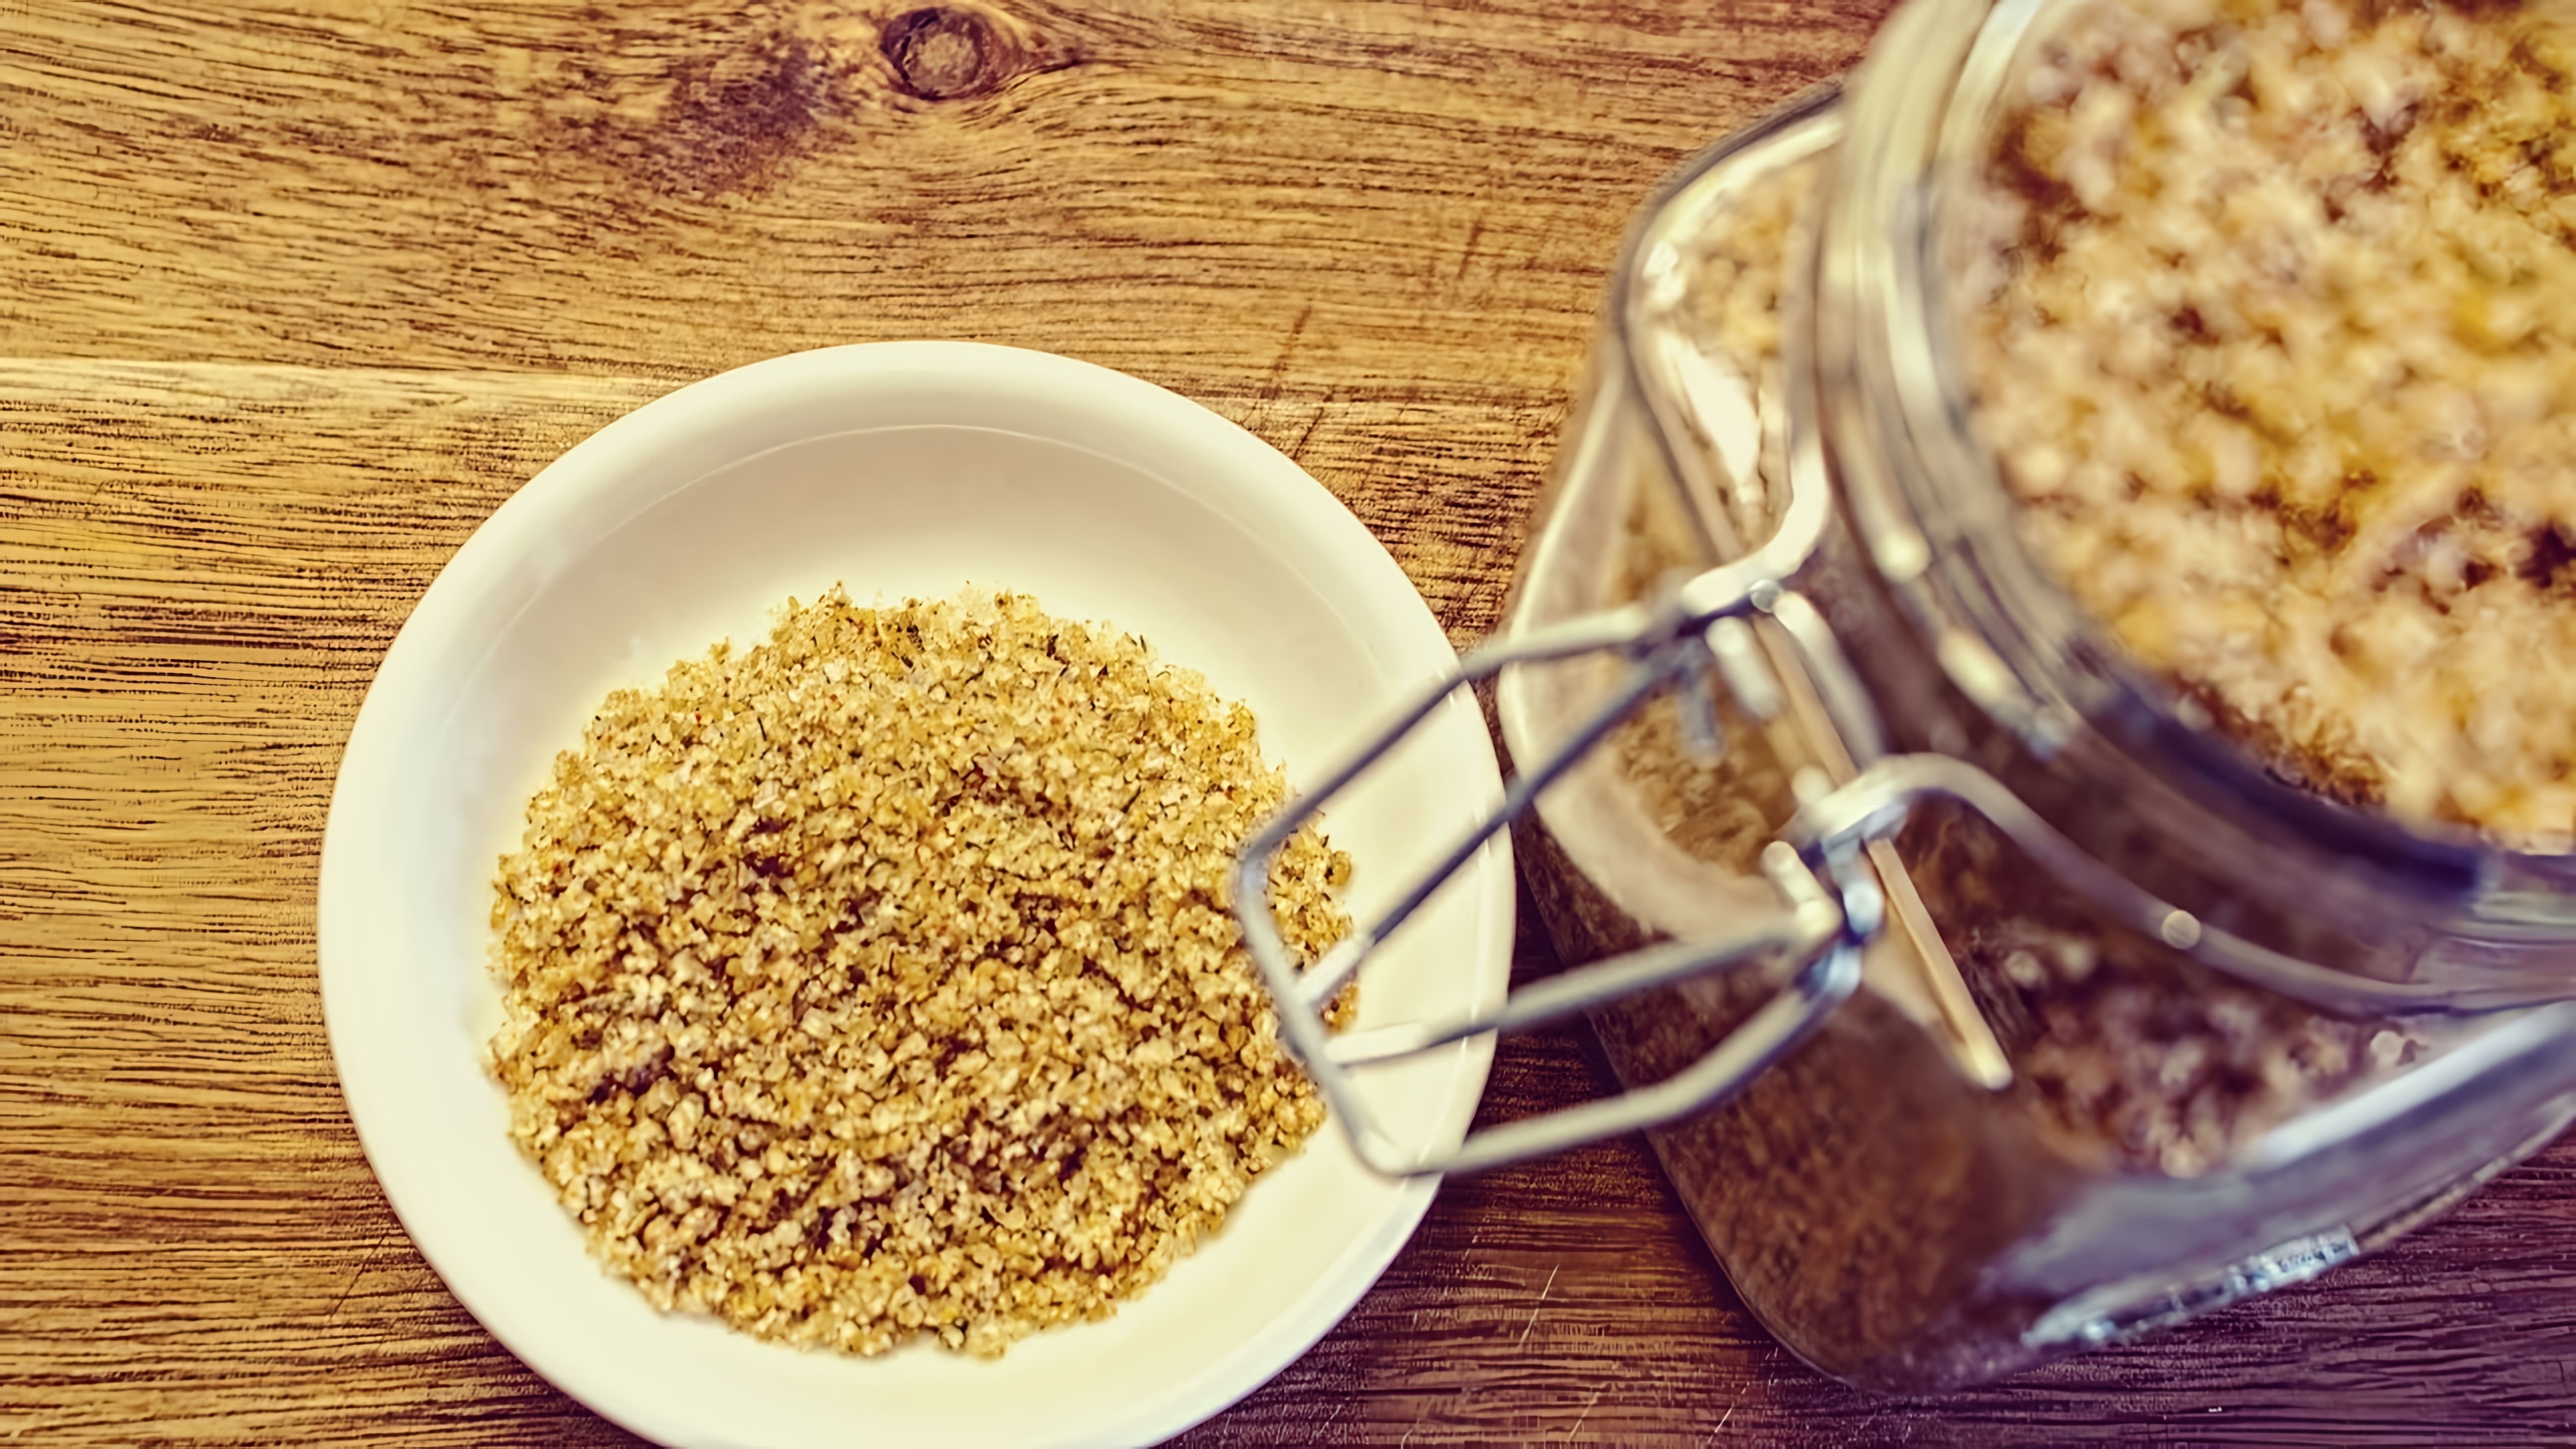 Адыгейская соль - это быстрый и простой рецепт, который можно приготовить в домашних условиях